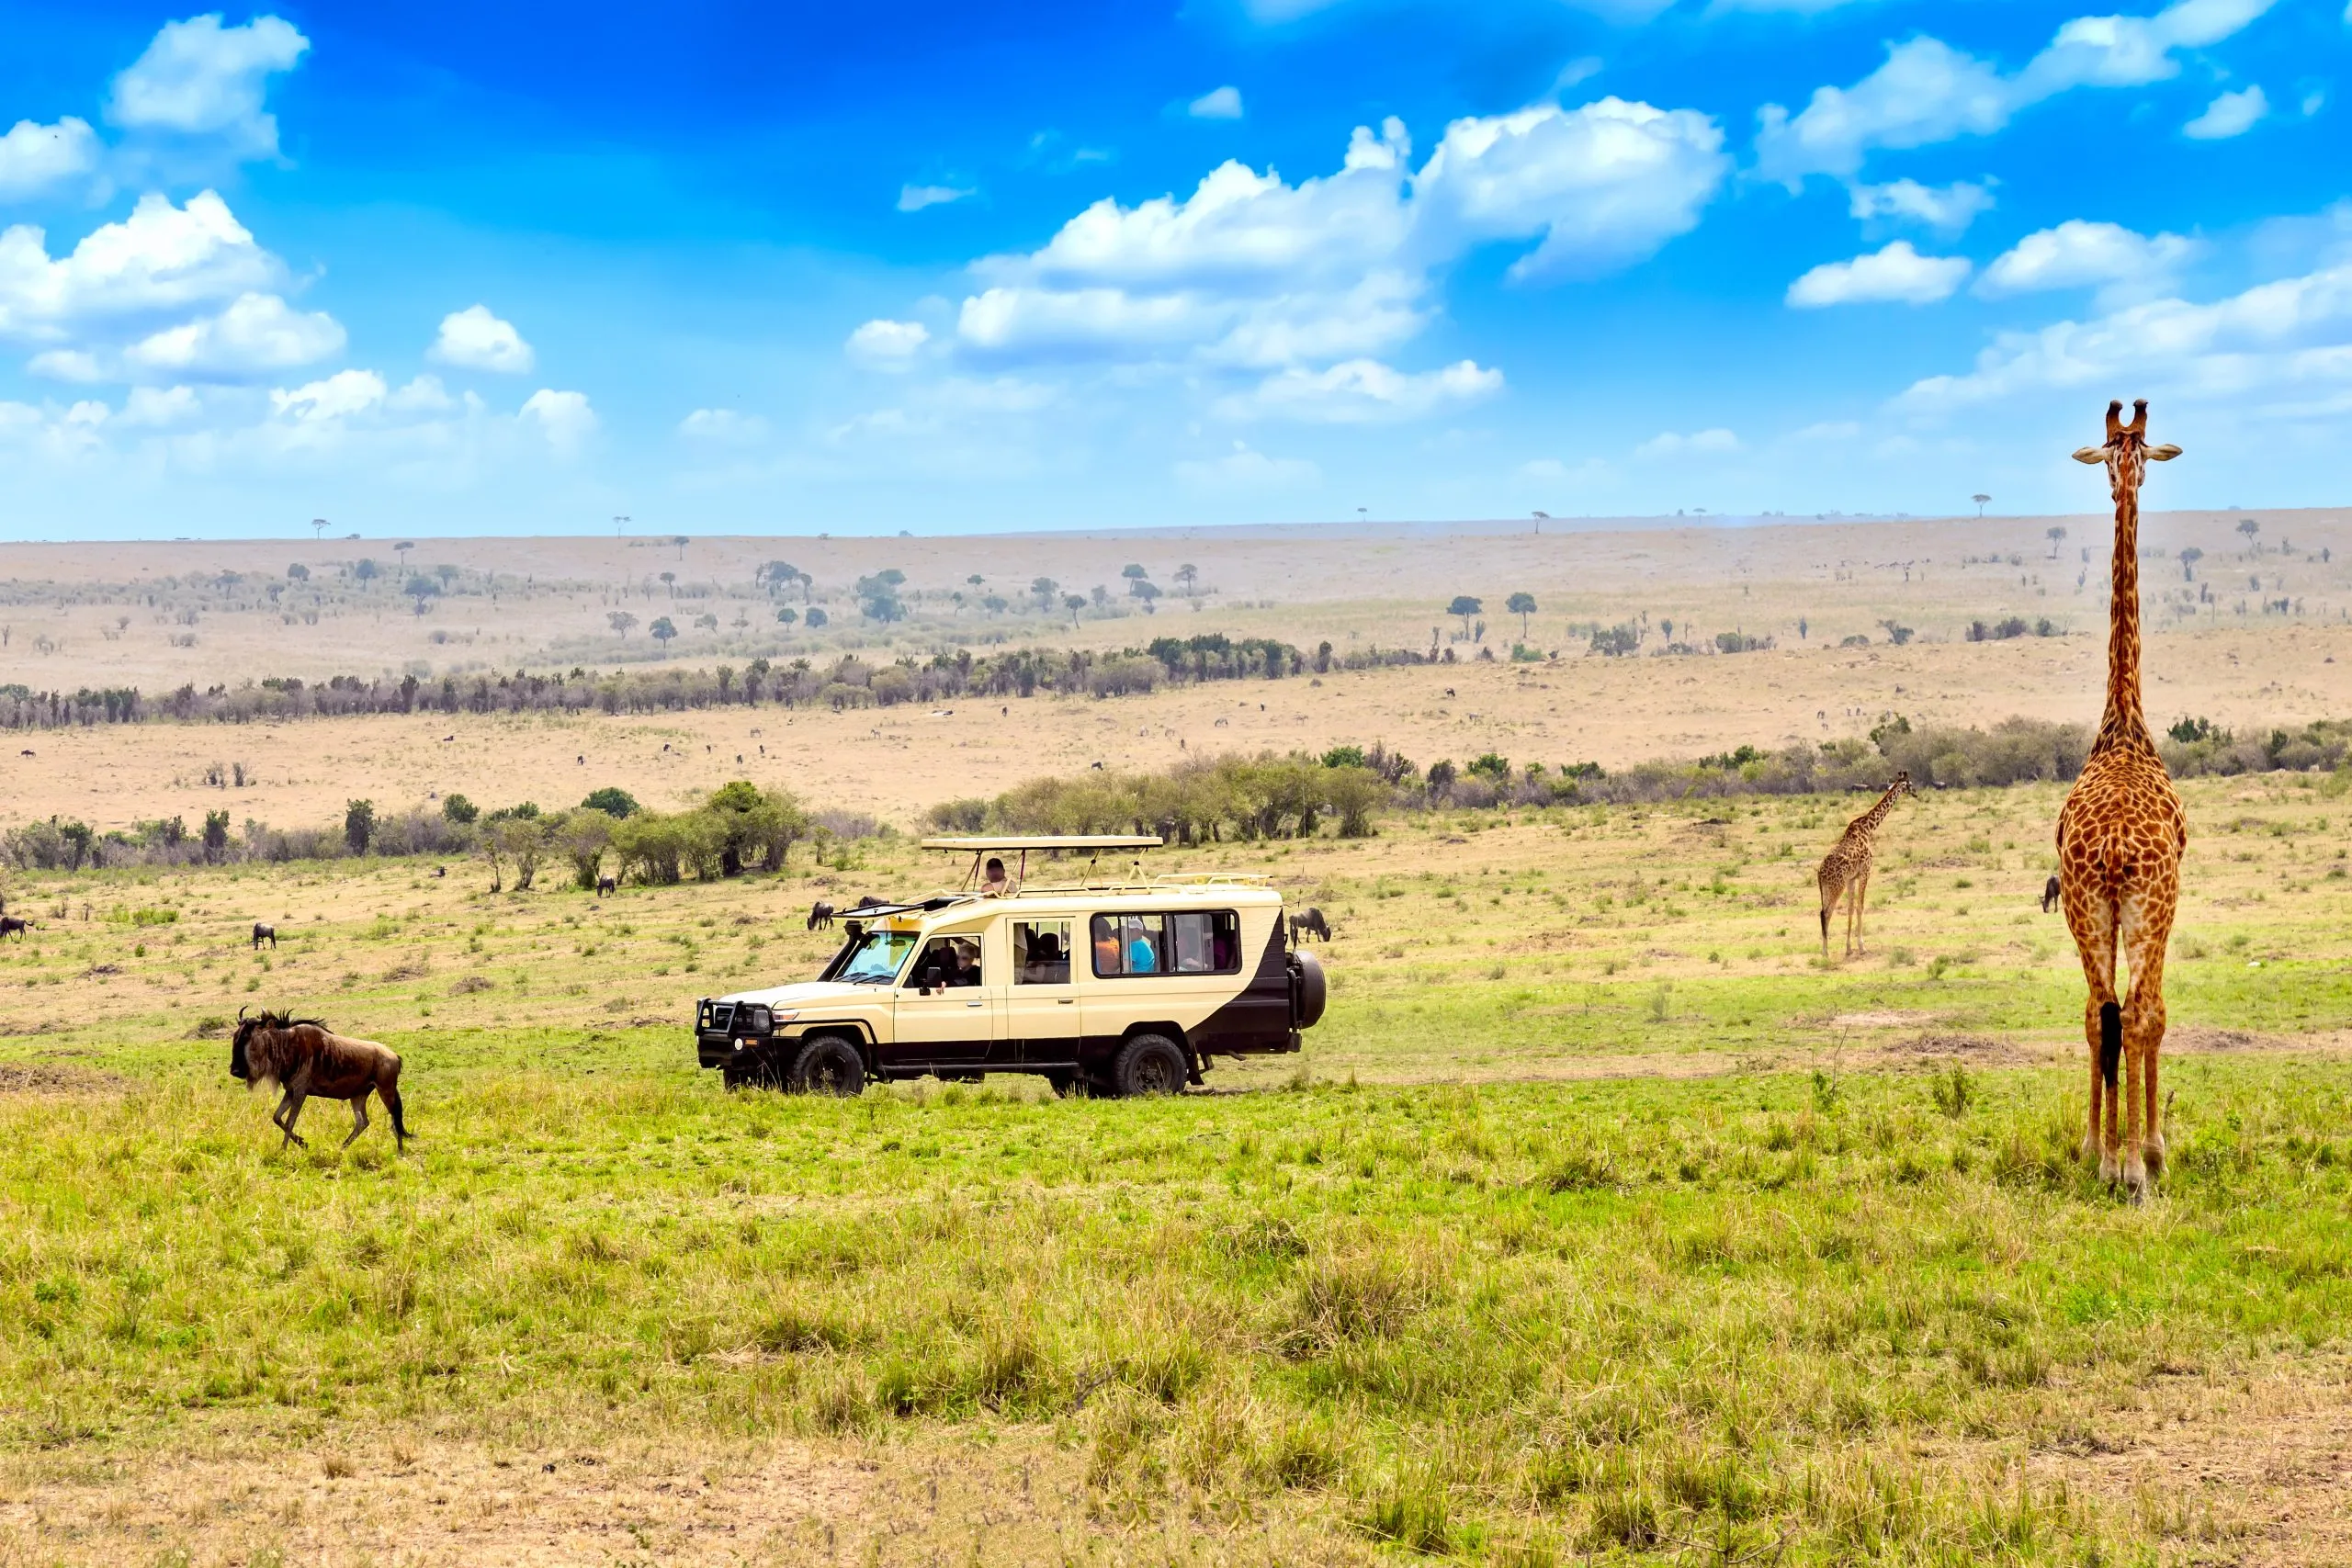 Wilde giraffe en gnoe bij safari-auto in Masai Mara National Park, Kenia. Safari concept. Afrikaans reislandschap